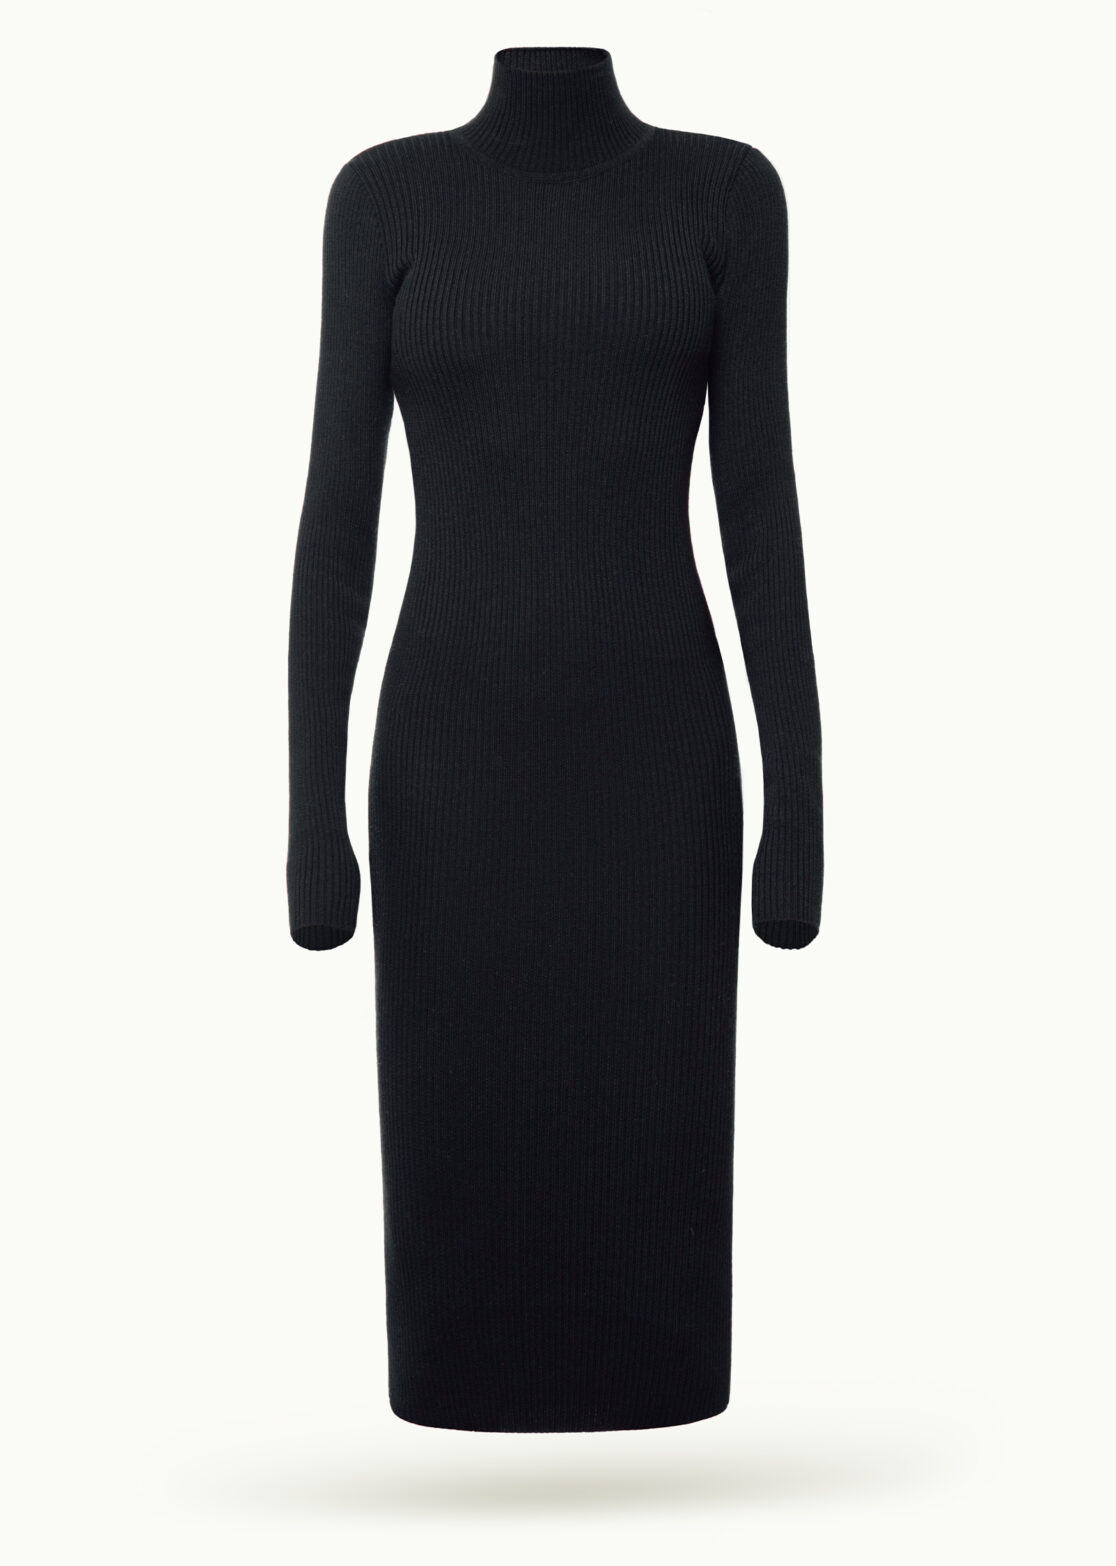 Women - Dresses - Knitwear - Duchesse Pencil Dress Black Obsidian Image Secondary